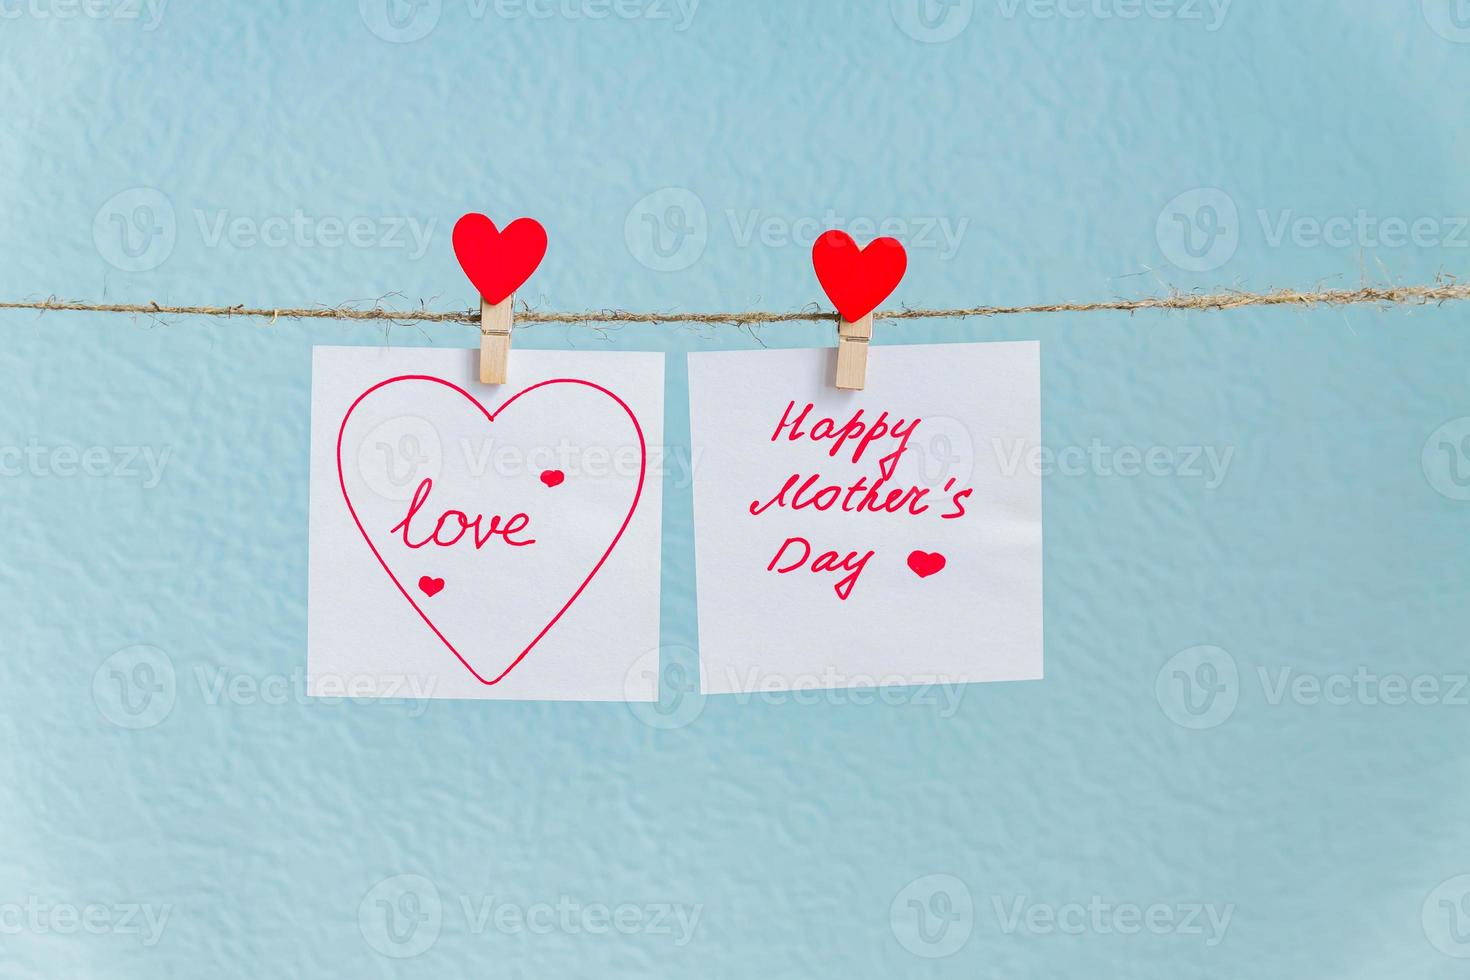 épingle de coeurs d'amour rouge accrochée à un cordon naturel sur fond bleu. inscription de bonne fête des mères sur un morceau de papier. photo